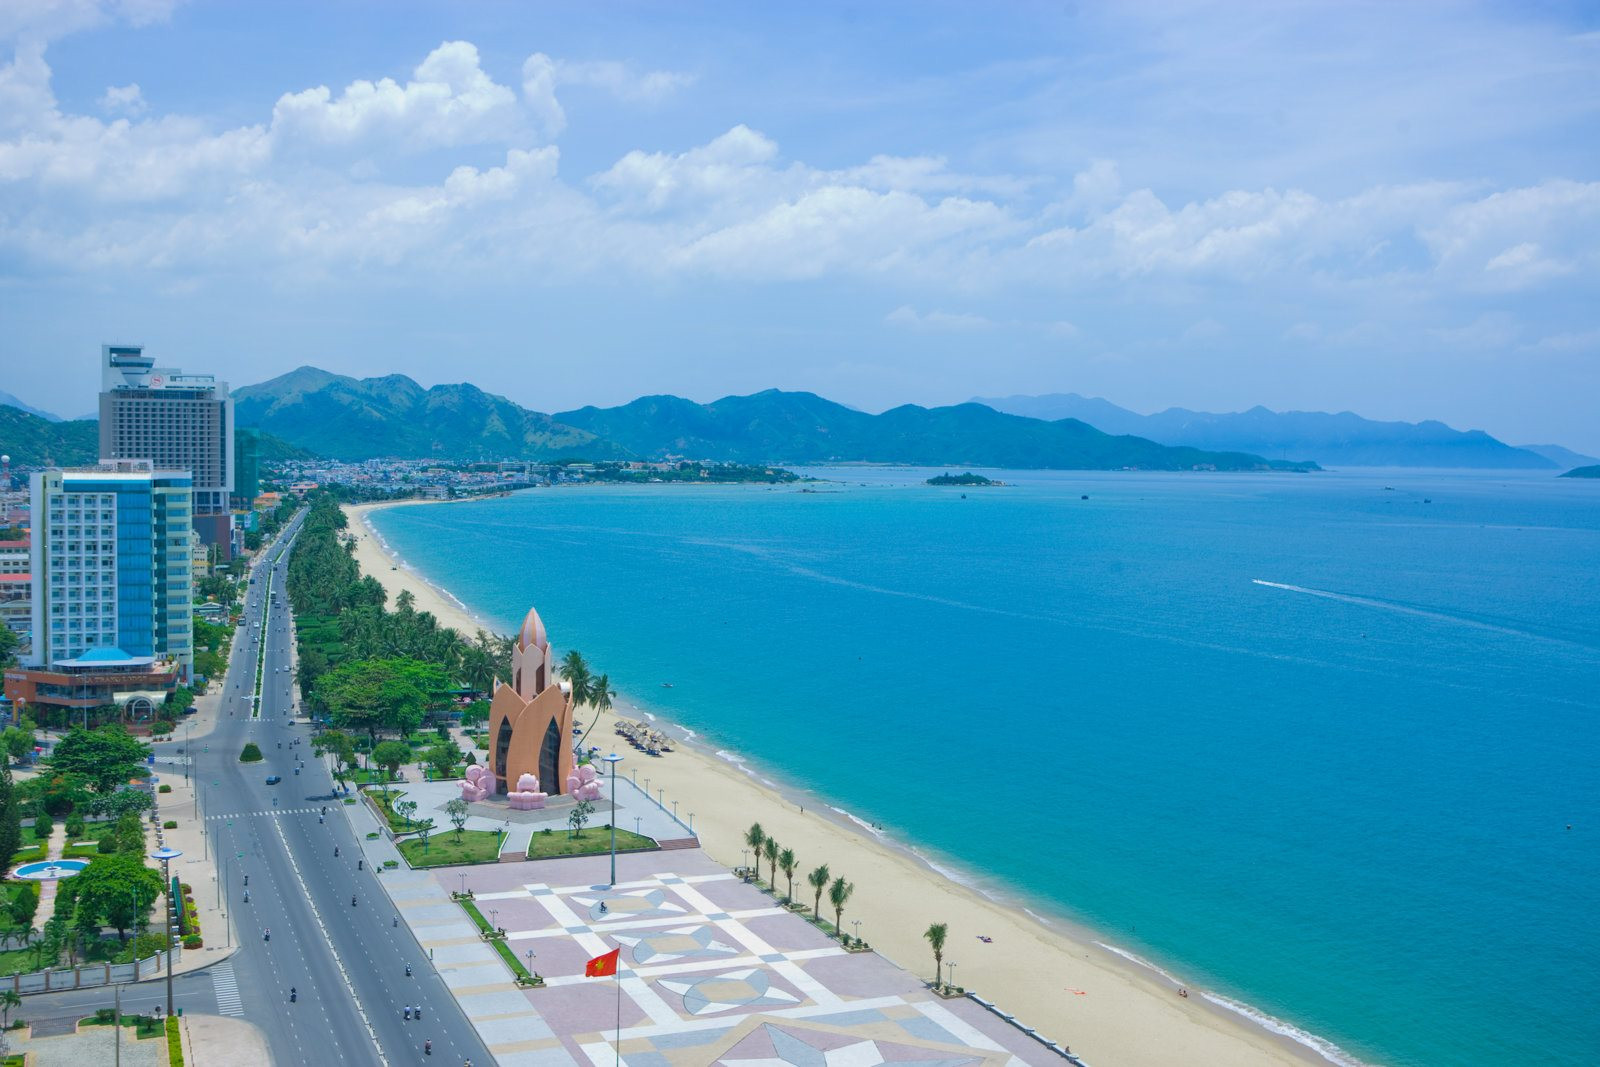 Tỉnh miền Trung có bờ biển dài nhất Việt Nam sắp lên thành phố trực thuộc trung ương, gần đây liên tục đón loạt dự án lớn- Ảnh 3.